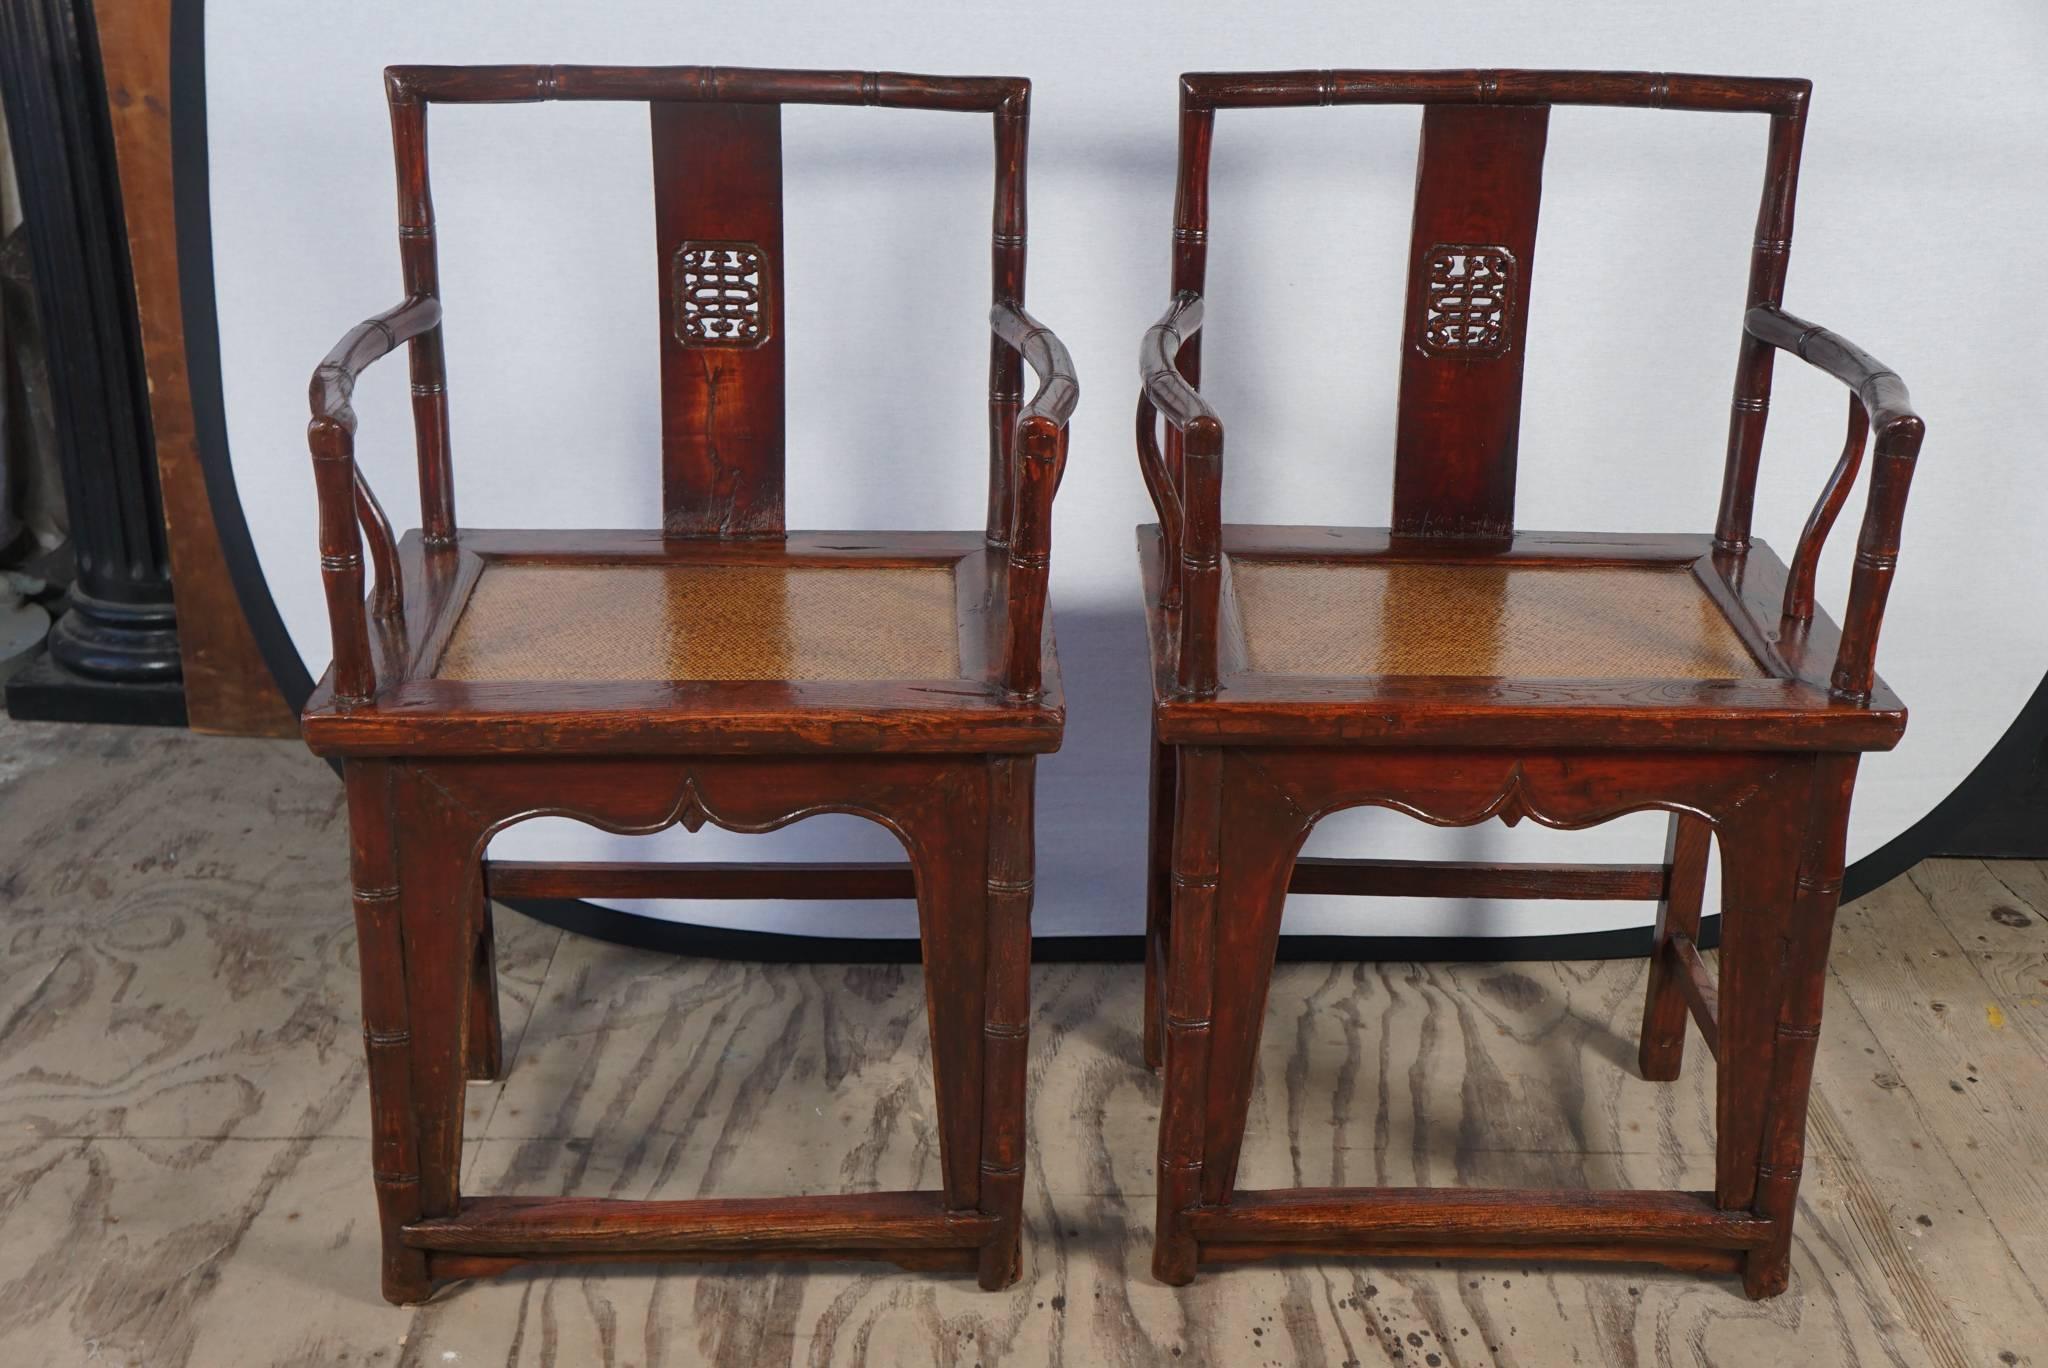 Diese Stühle aus der Zeit um 1840 sind gut verarbeitet und haben noch die originalen geflochtenen Sitzmatten aus Spaltrohr. Das Holz ist mit einem tiefroten, transparenten Lack lackiert, der dem Holz eine glänzende Oberfläche verleiht. Sie sind